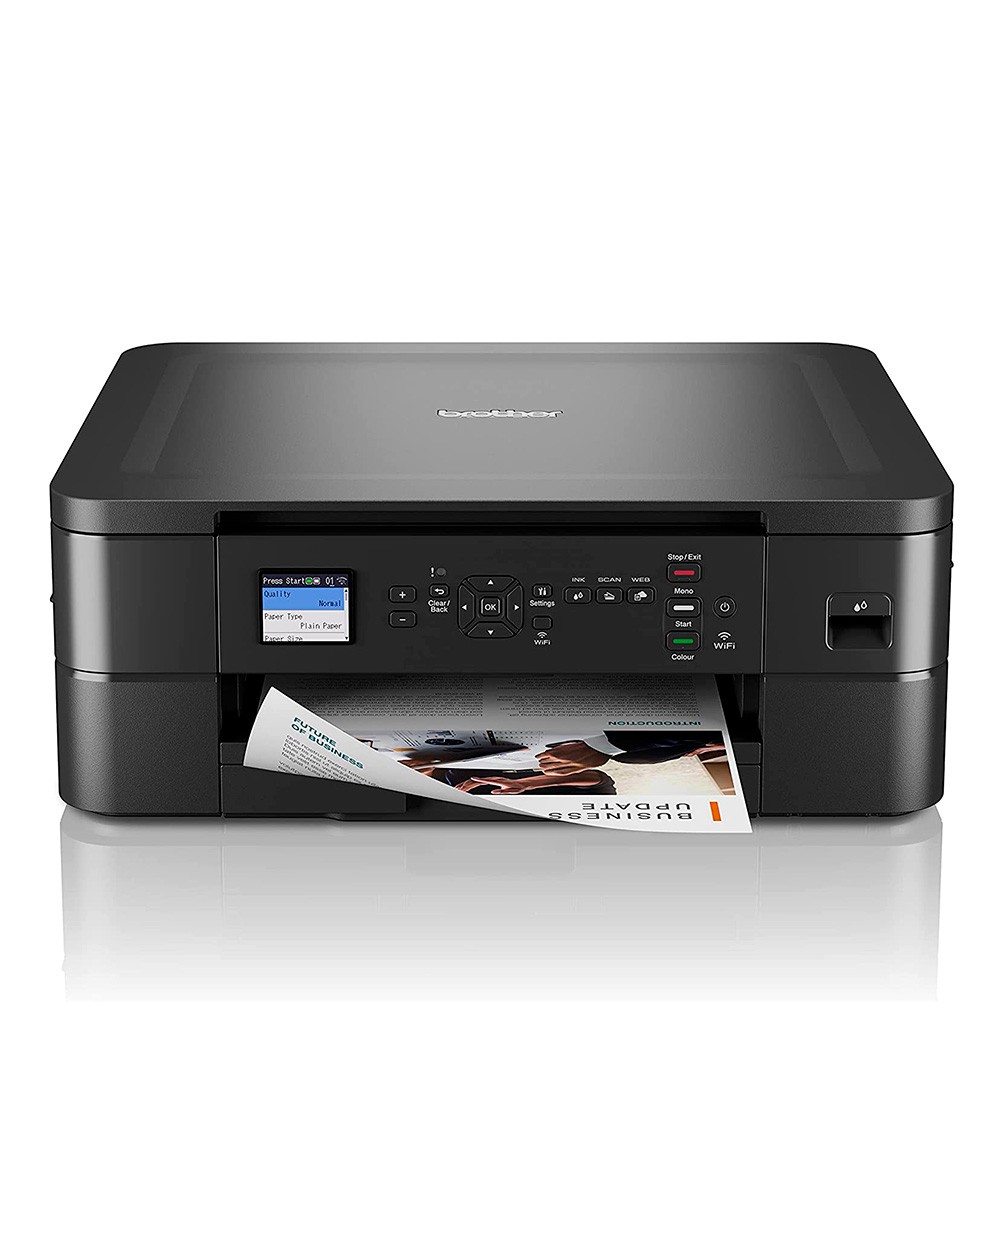 Equipo multifuncion brother dcpj1050dw 17 ppm negro 95 color copiadora escaner impresora bandeja 150 hojas